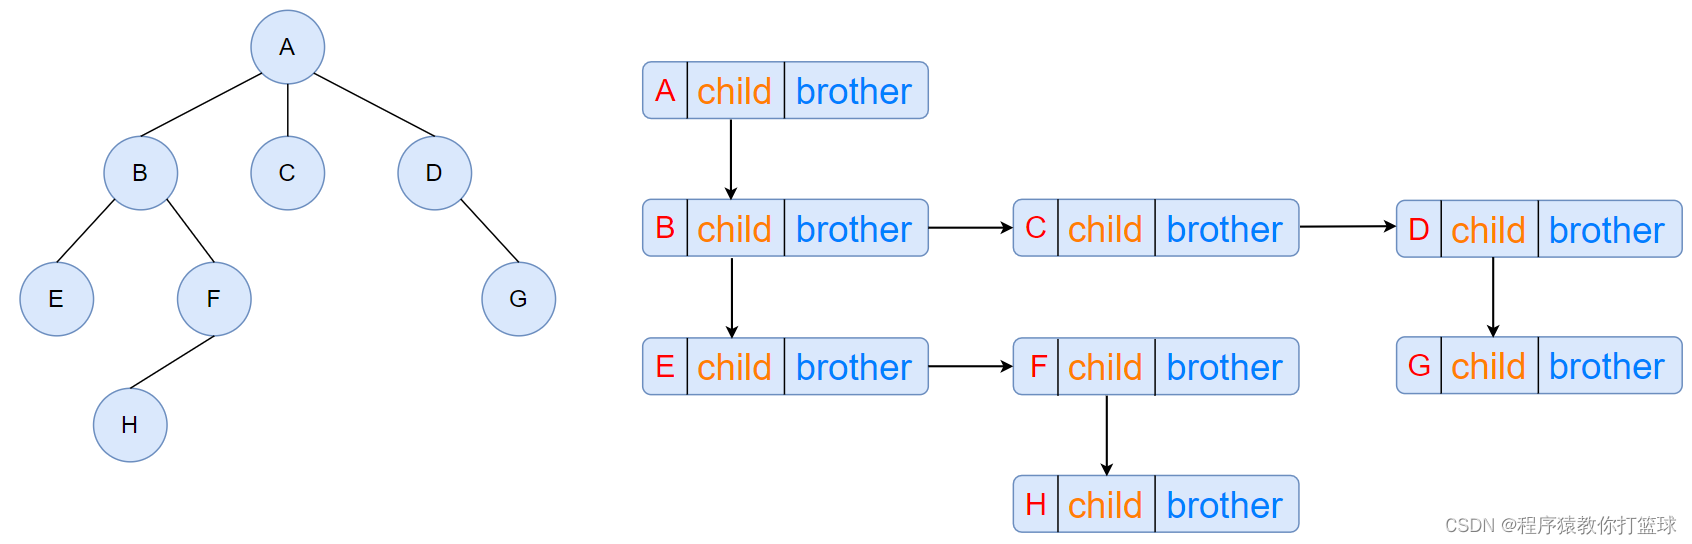 【Java 数据结构】树和二叉树